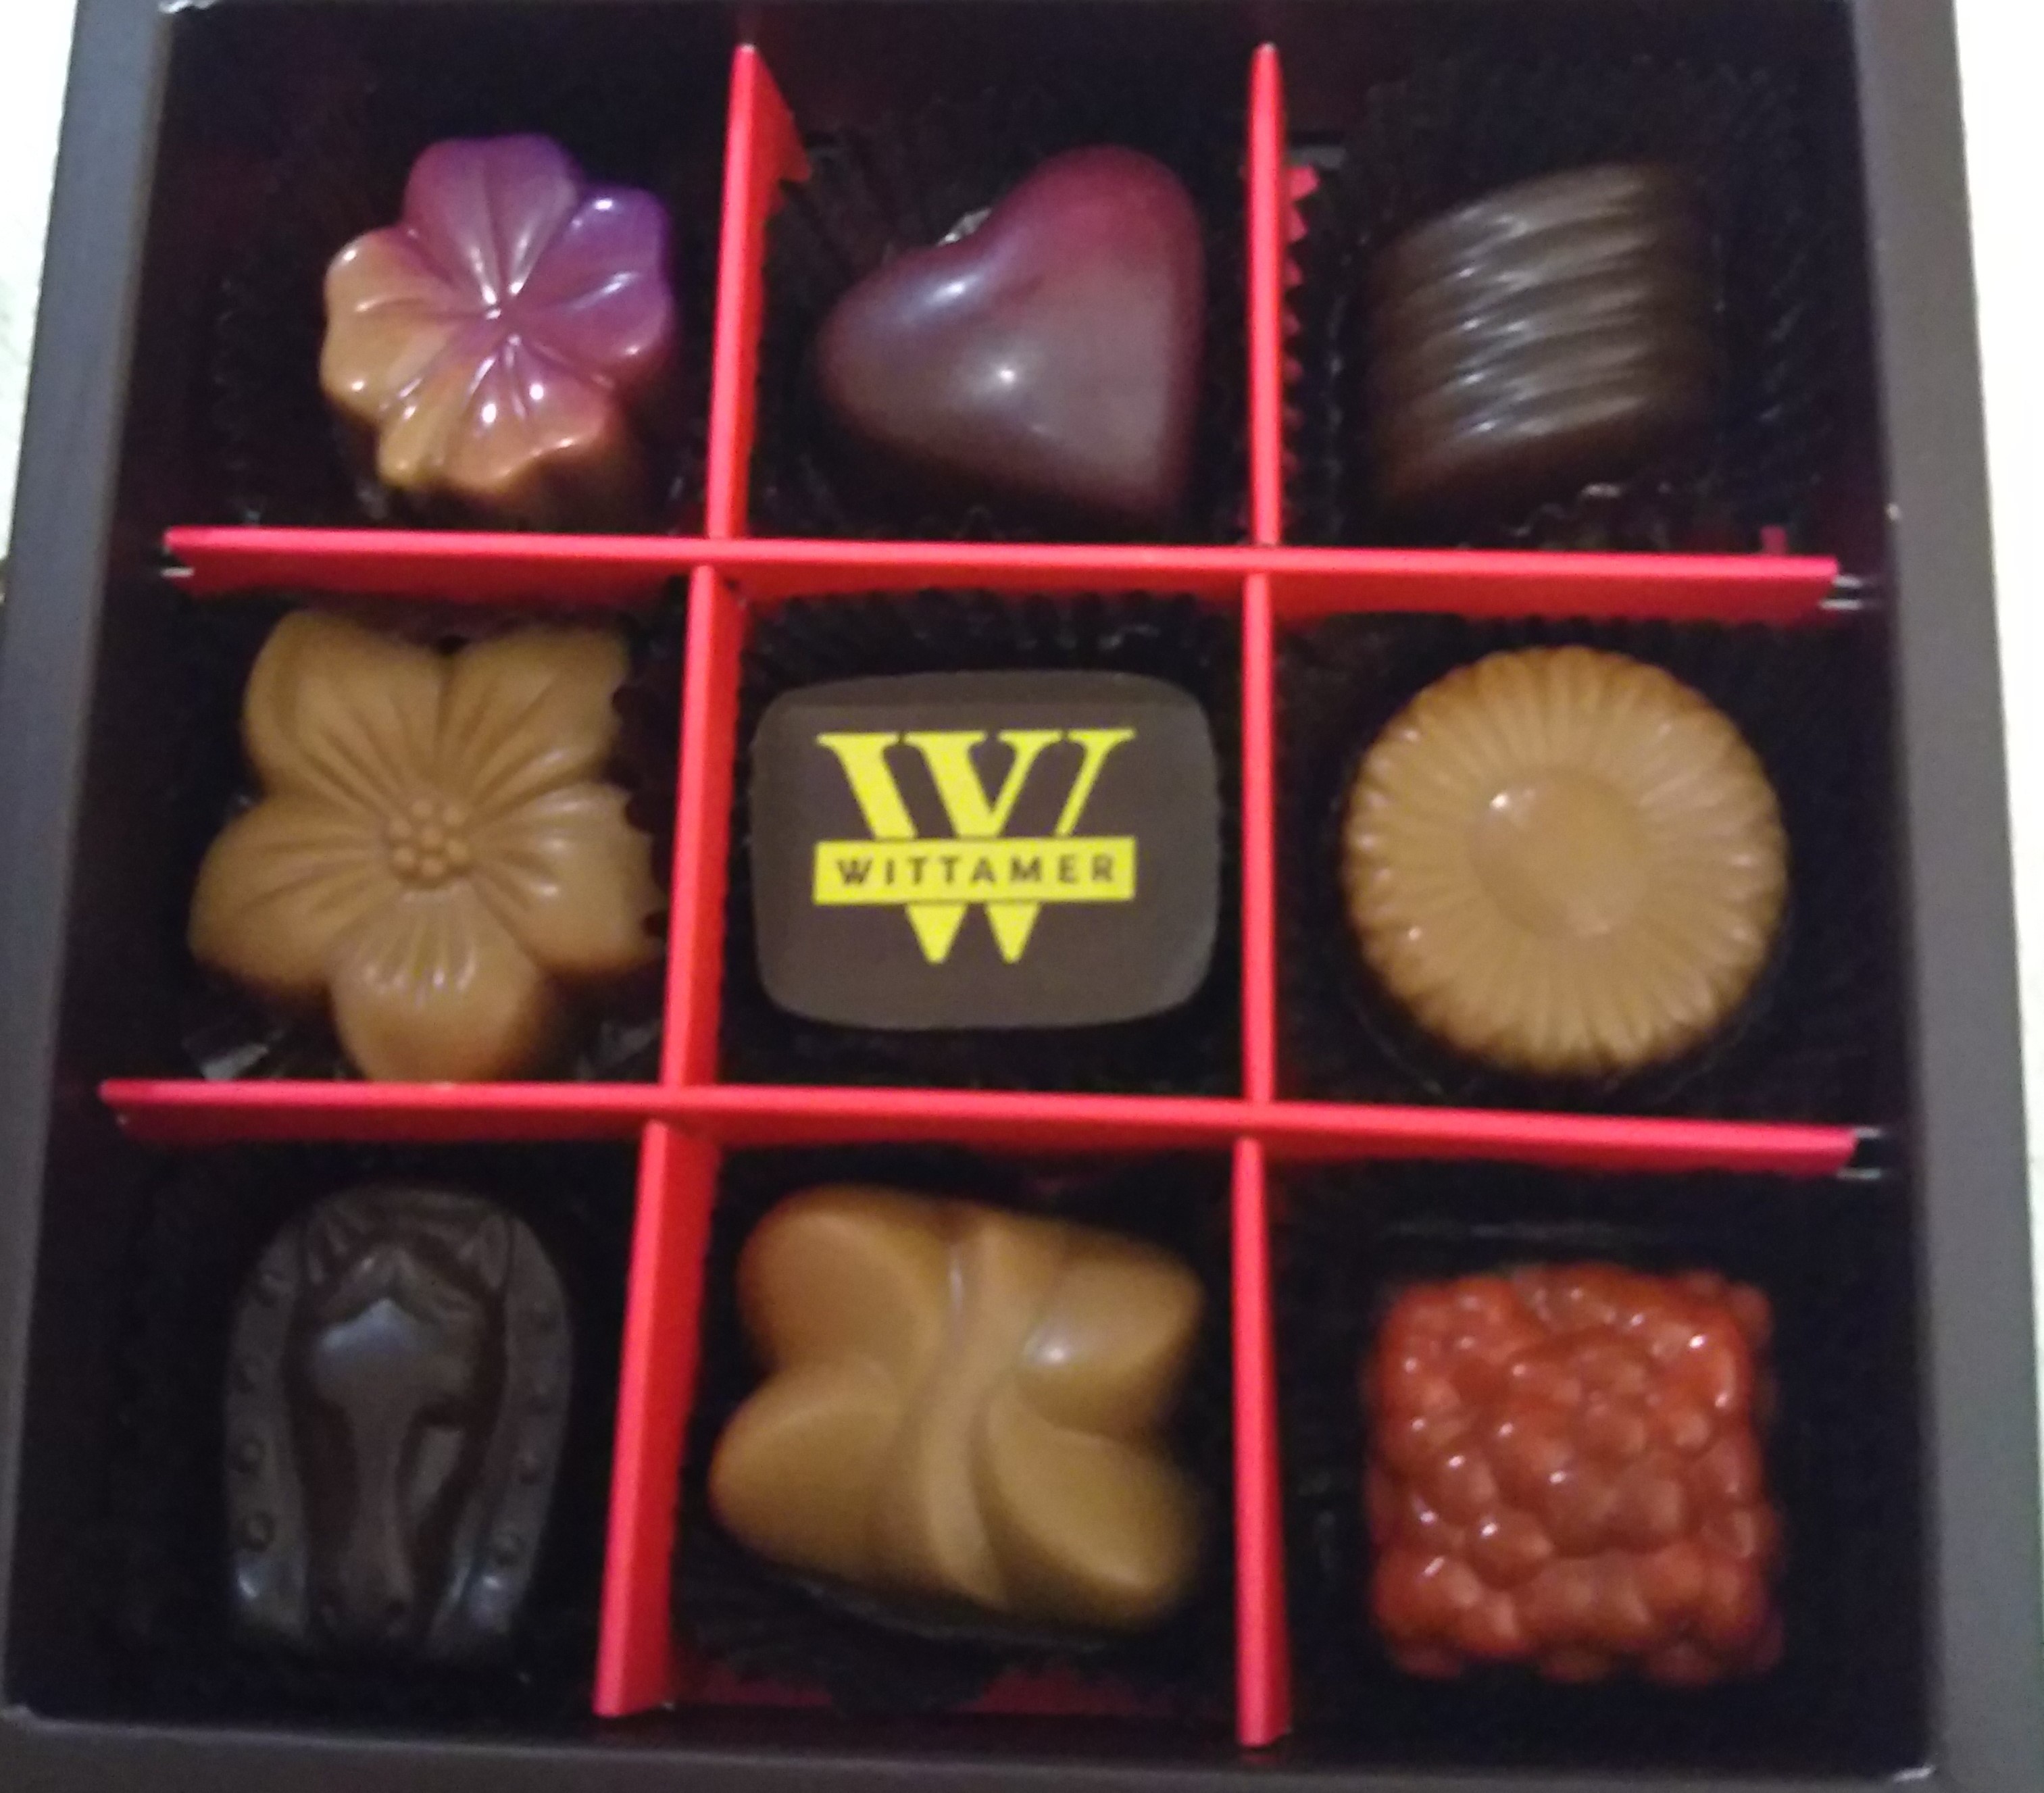 一番美味しいと思う高級チョコは ヴィタメール Sendaiスクスクdays